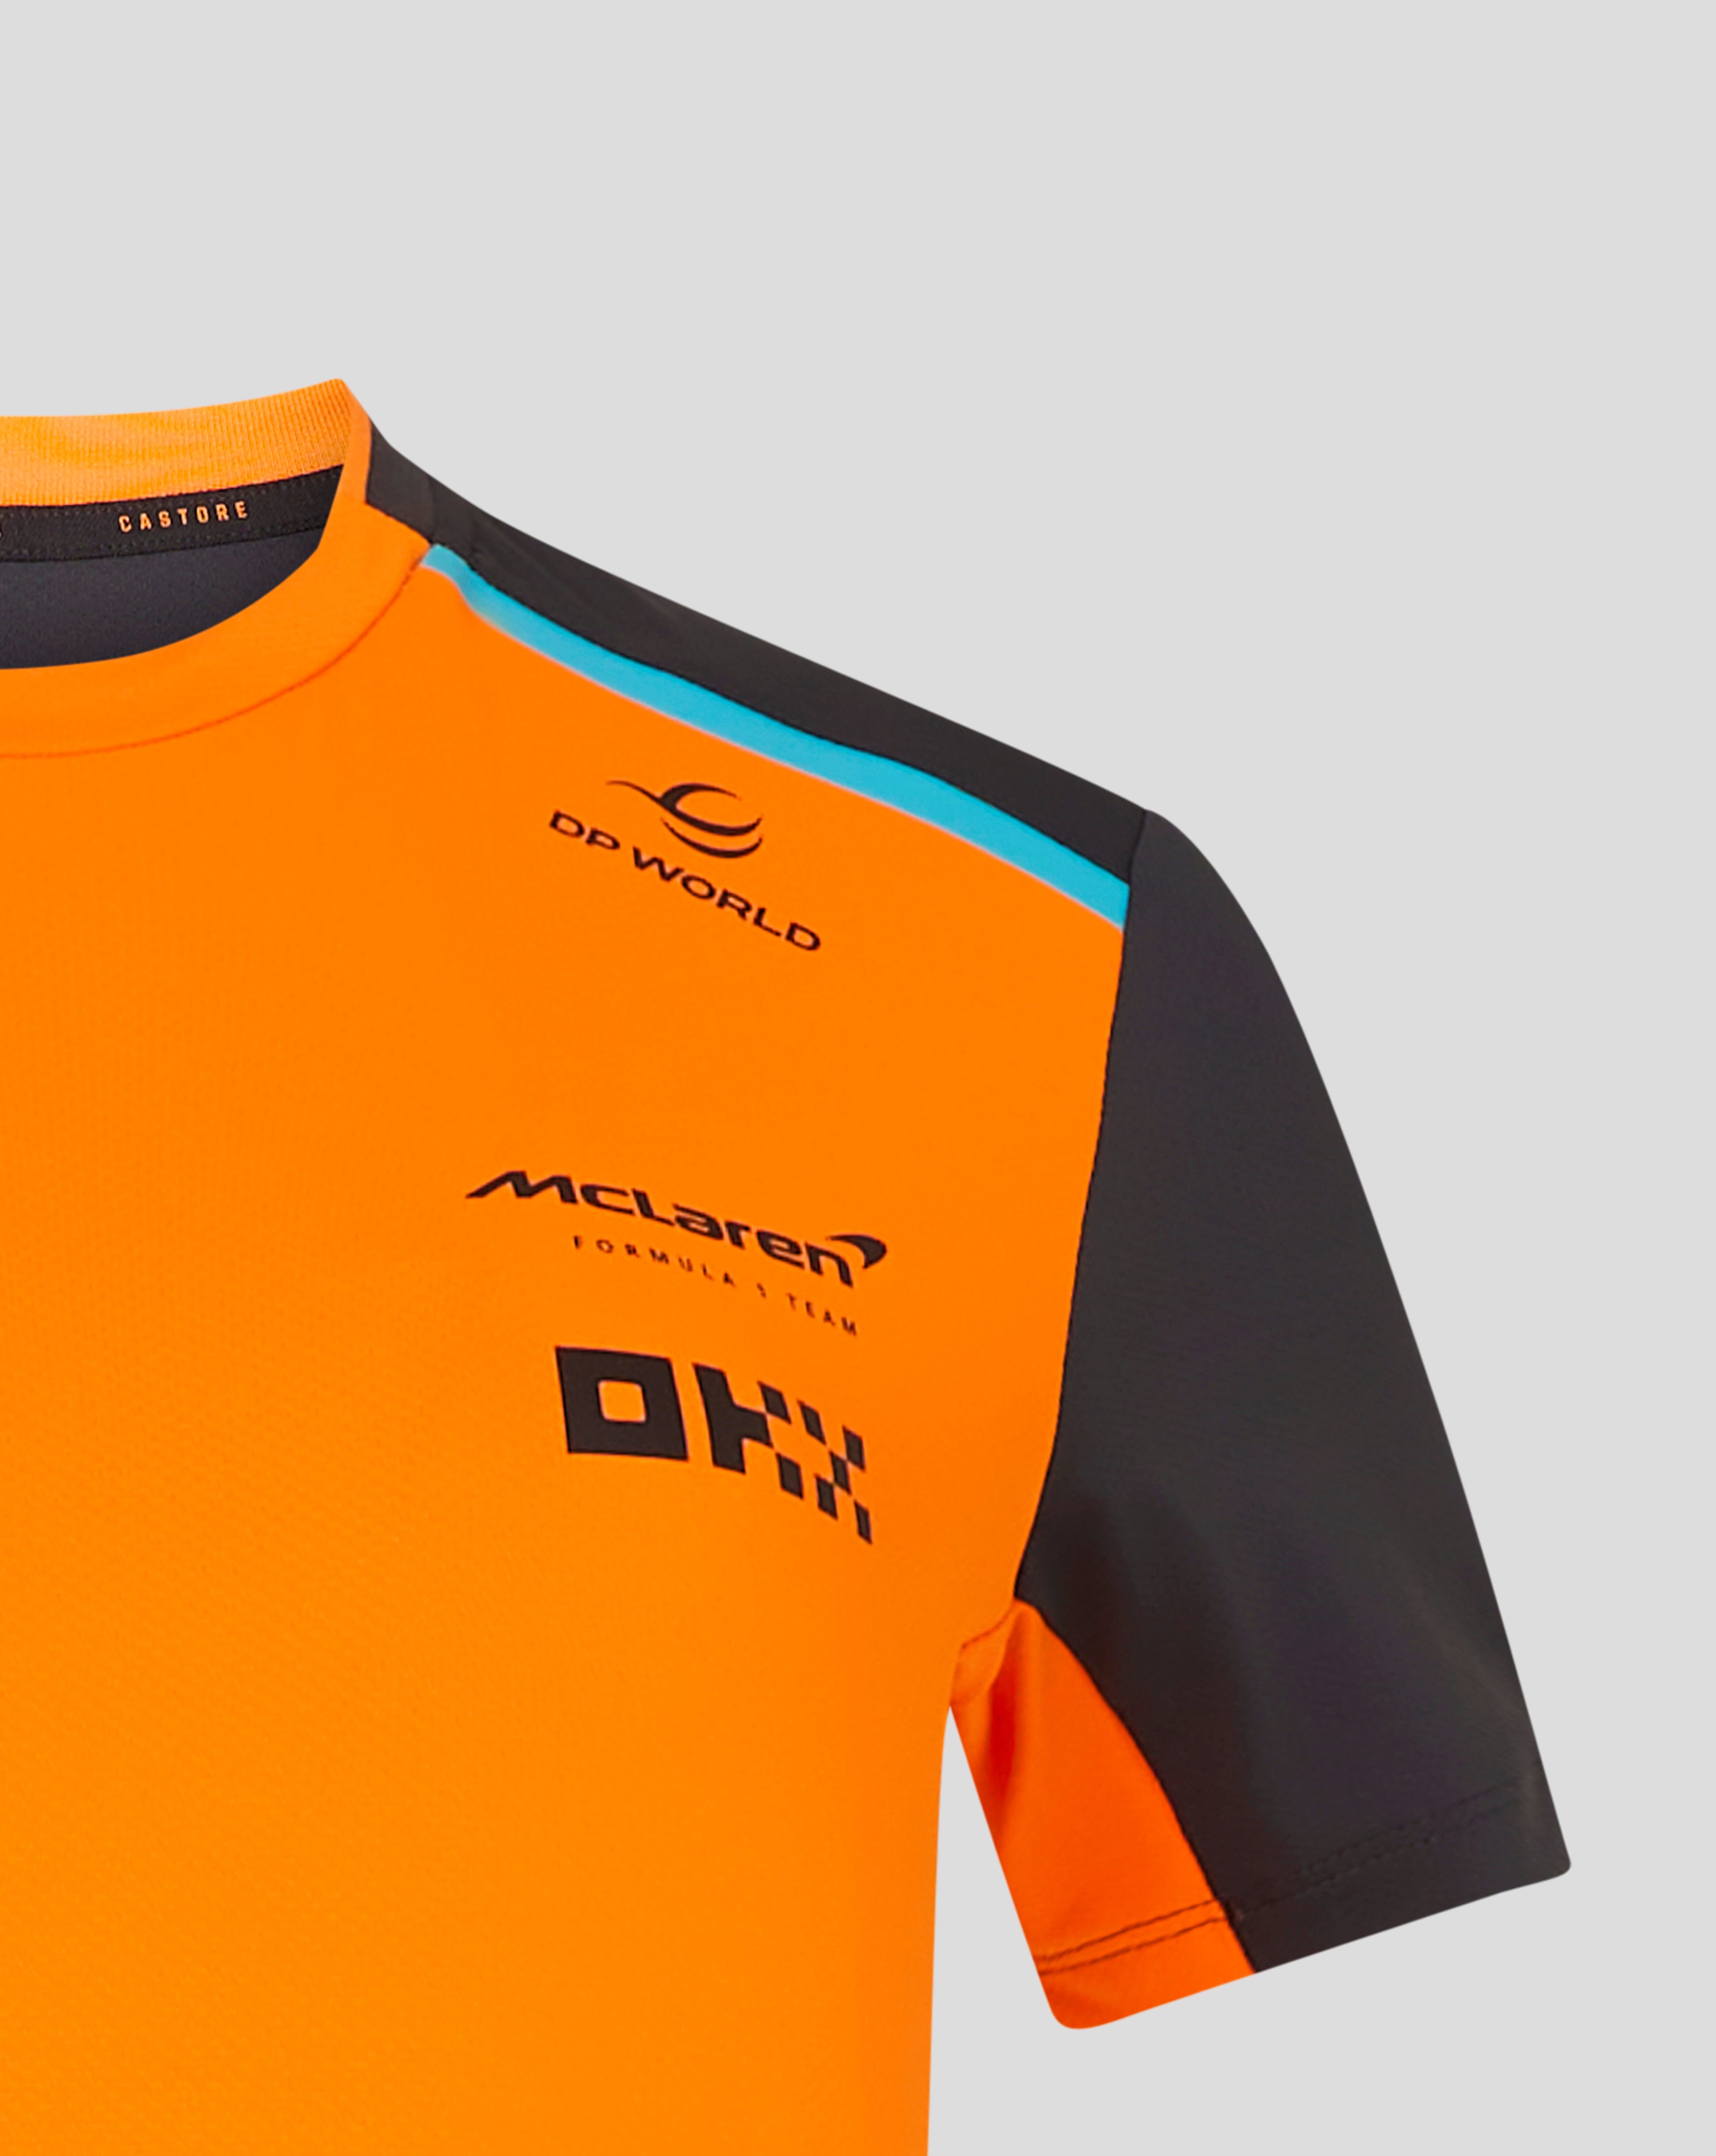 ➜ Camiseta Mclaren Color Papaya F1 Oficial